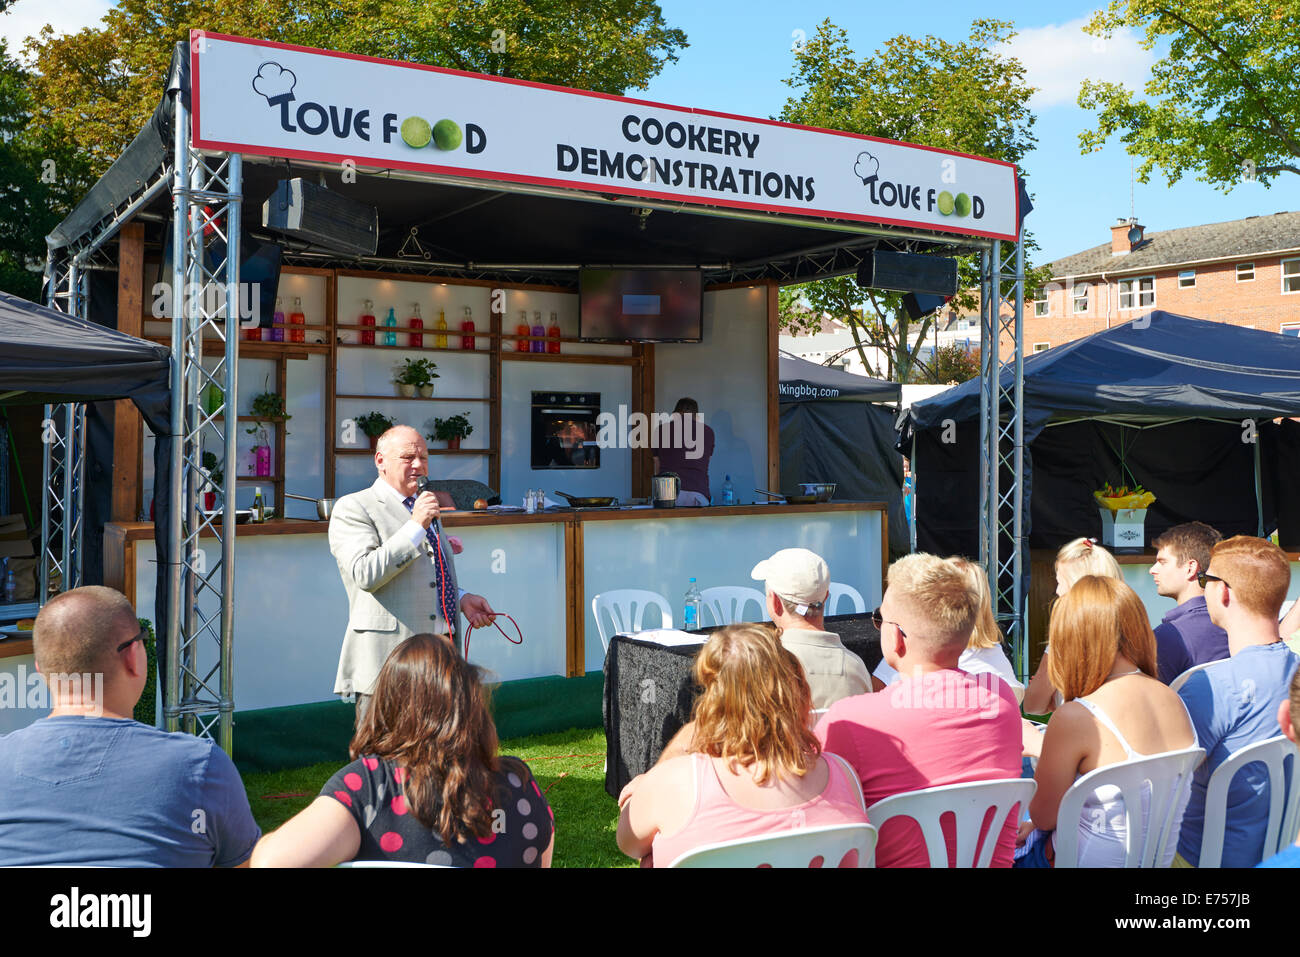 Peter Allen présentant les démonstrations de cuisine en direct au Festival des aliments et boissons Leamington Spa Warwickshire UK Banque D'Images